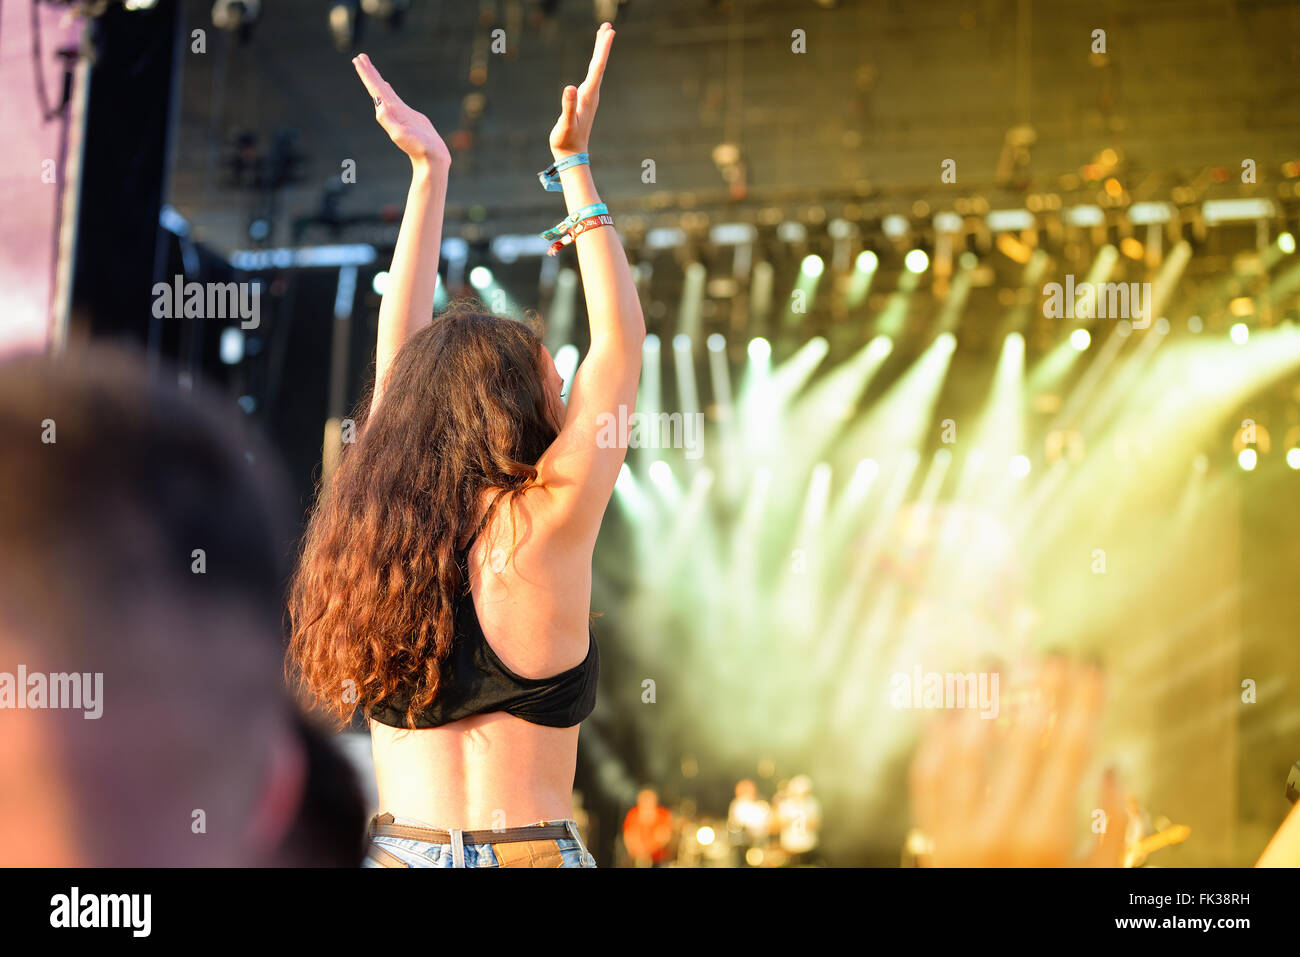 BENICASSIM, Spanien - 17 Juli: Menge in einem Konzert am FIB Festival am 17. Juli 2014 in Benicassim, Spanien. Stockfoto